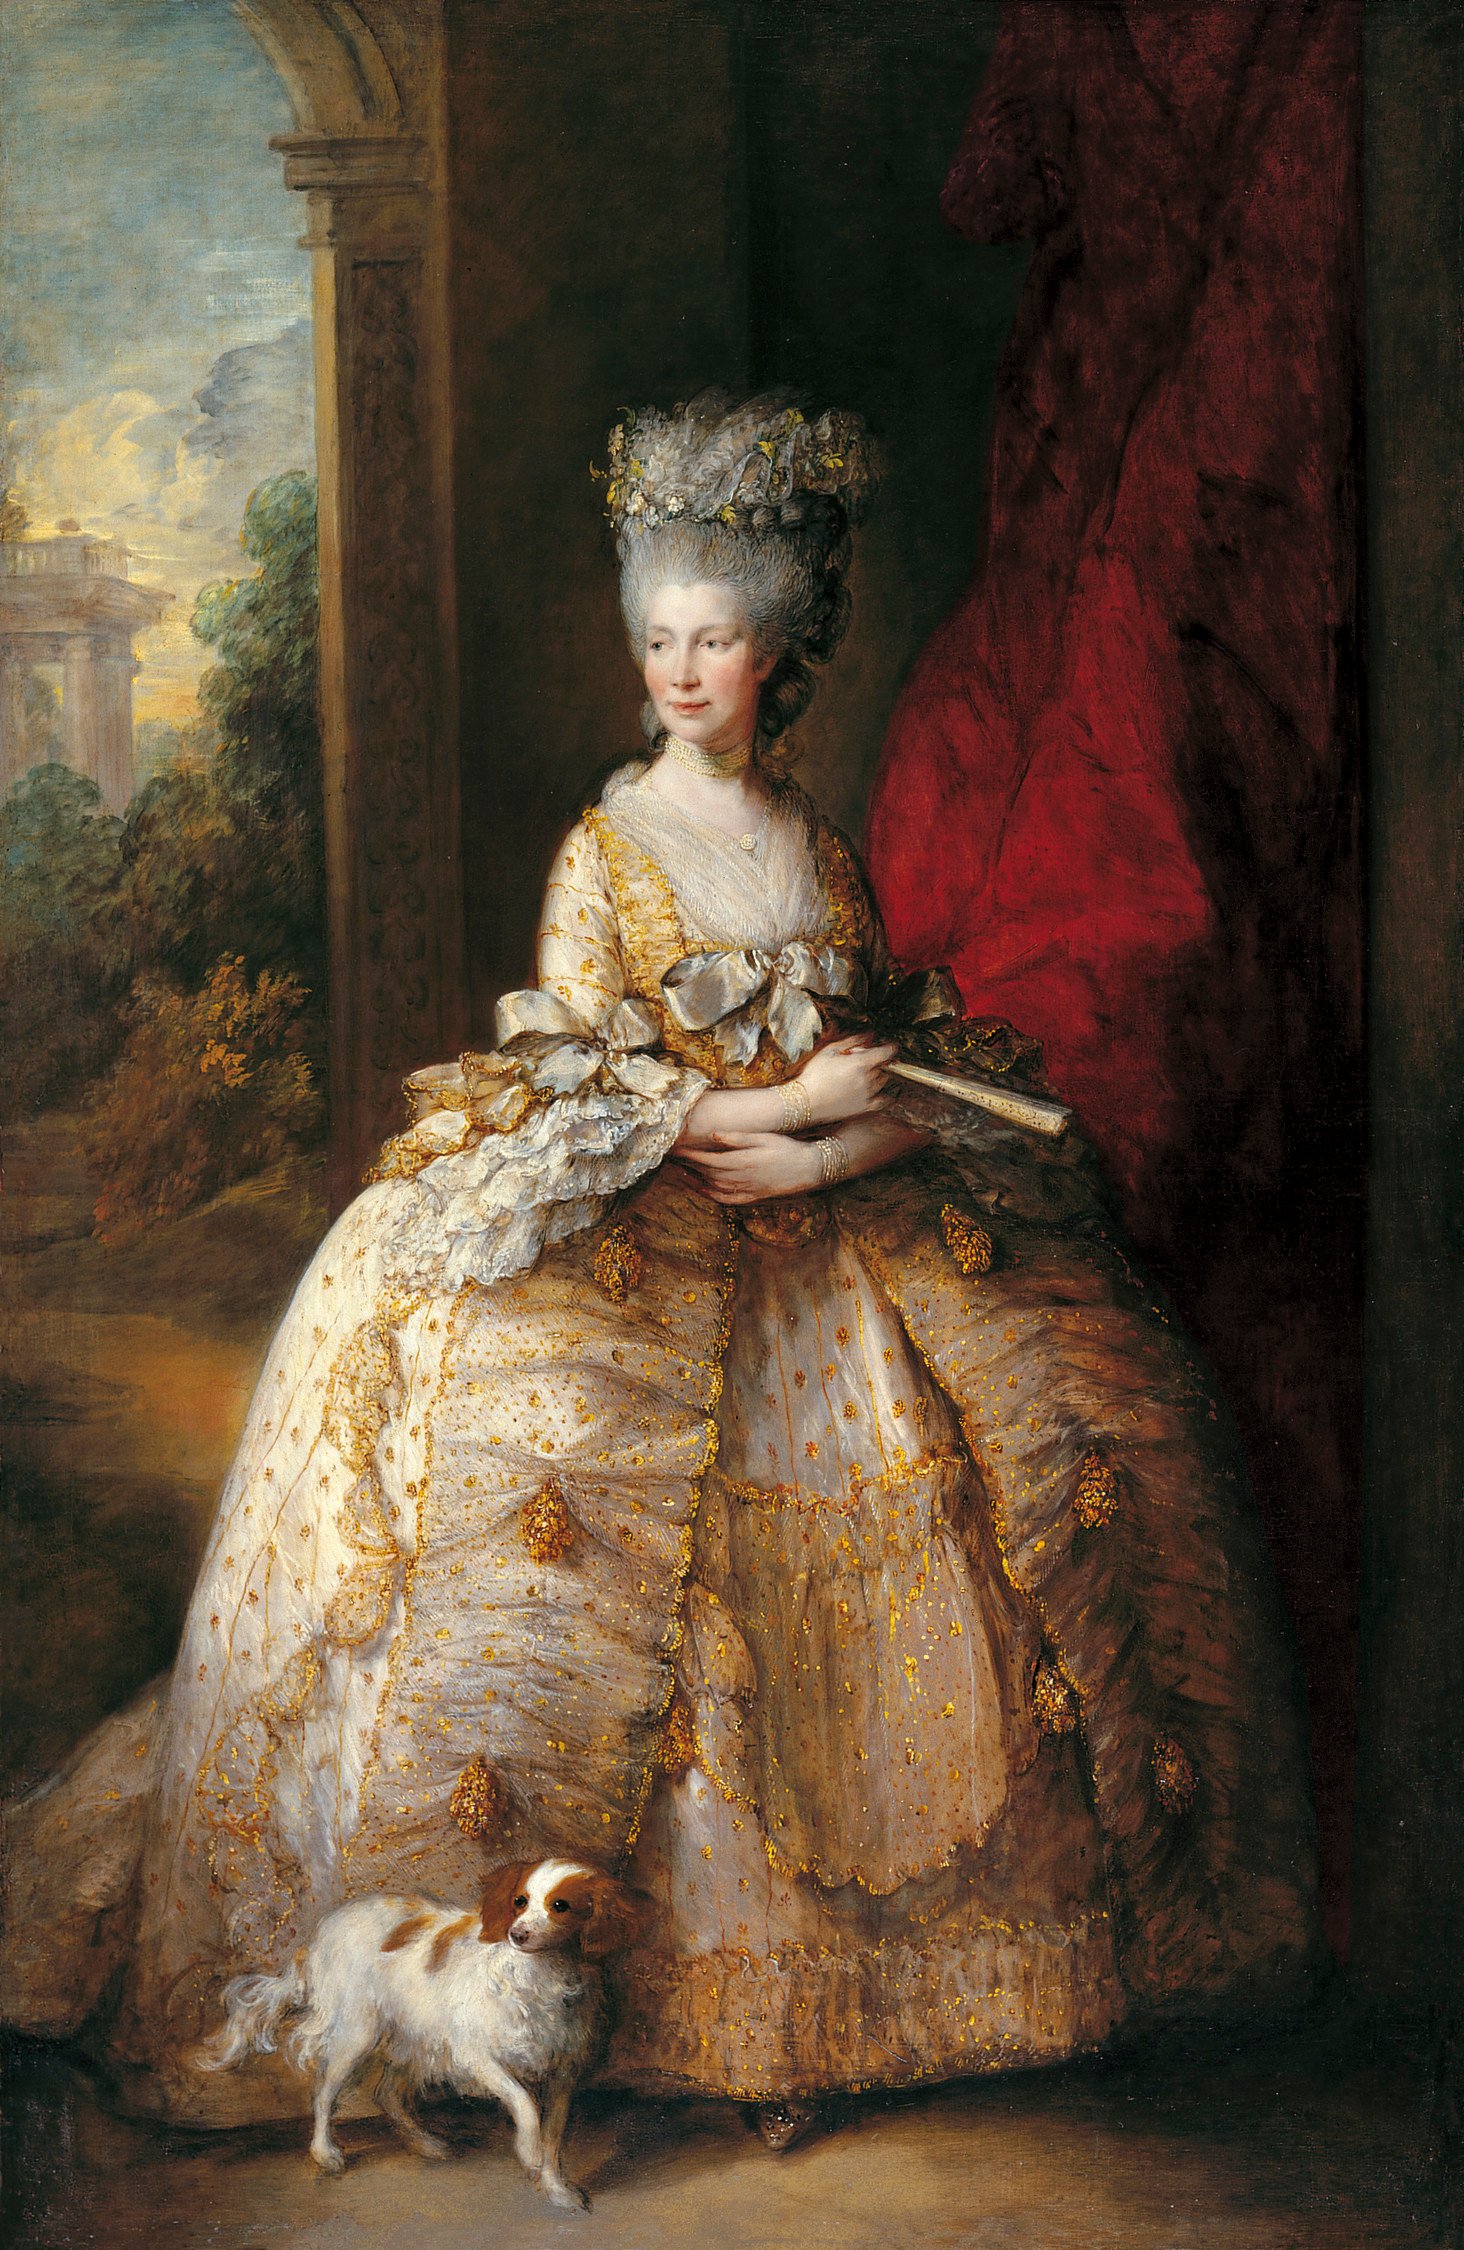 Bức họa chân dung Vương hậu Charlotte bởi họa sĩ Thomas Gainsborough